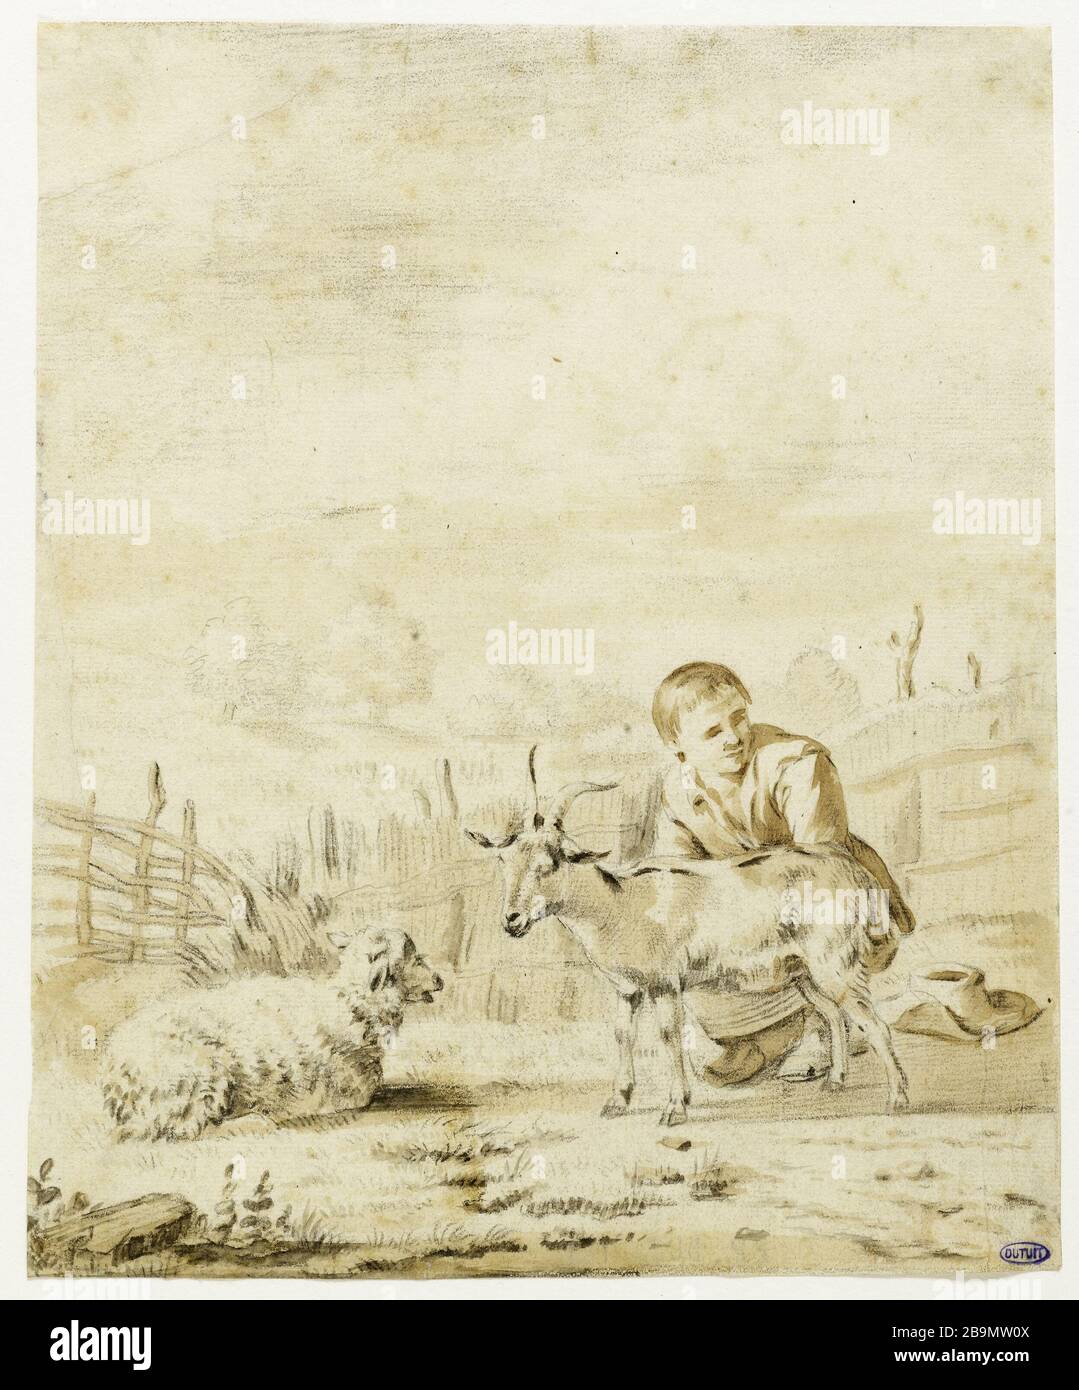 Giovane ragazzo mungendo una capra Karel Dujardin (1622-78). Jeune garçon trayant une chèvre. Pierre noire et lavis de bistre, 1652. Musée des Beaux-Arts de la Ville de Paris, Petit Palais. Foto Stock